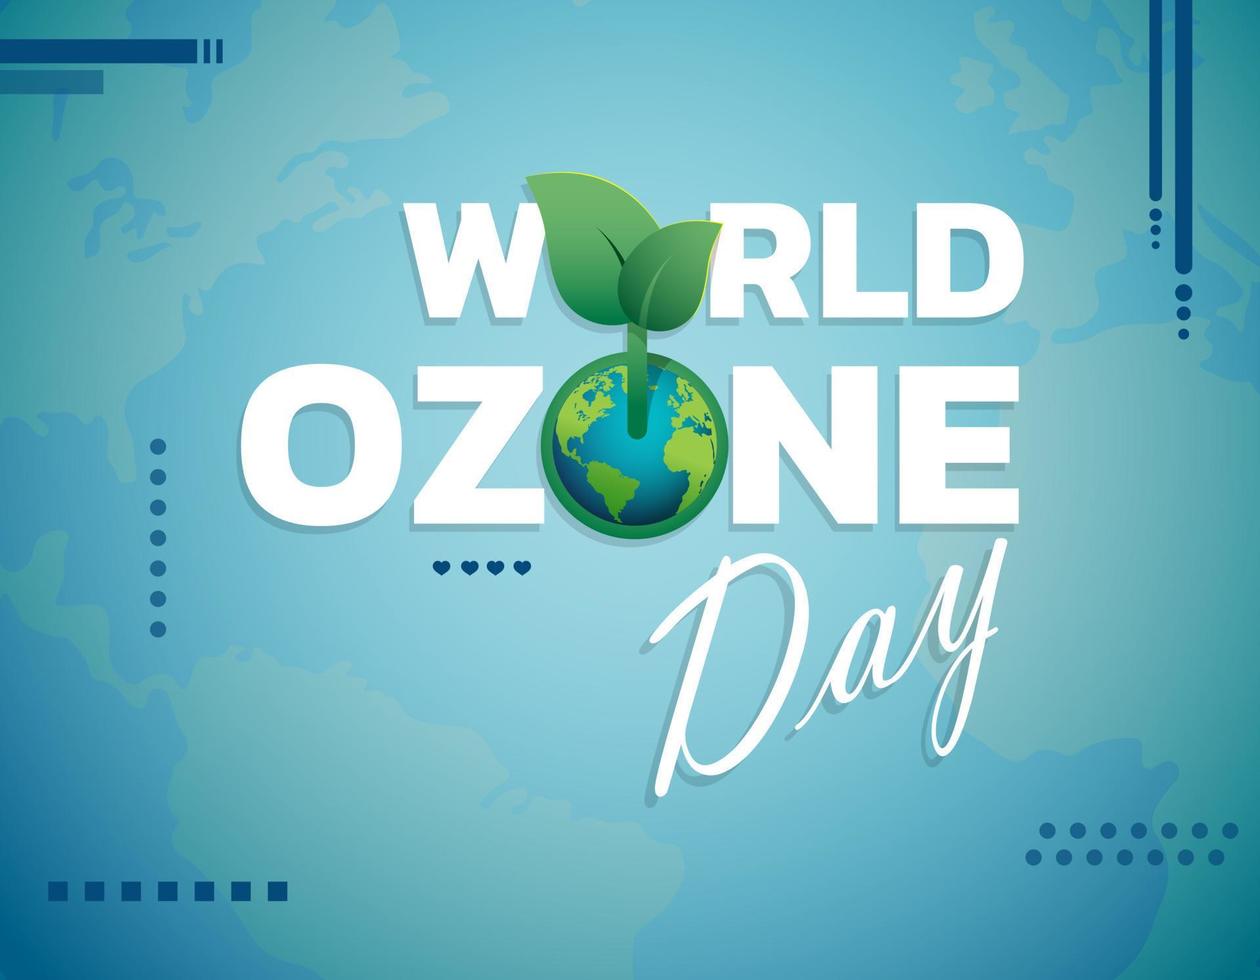 världens ozondag vektorillustration för affisch, banner design. vektor